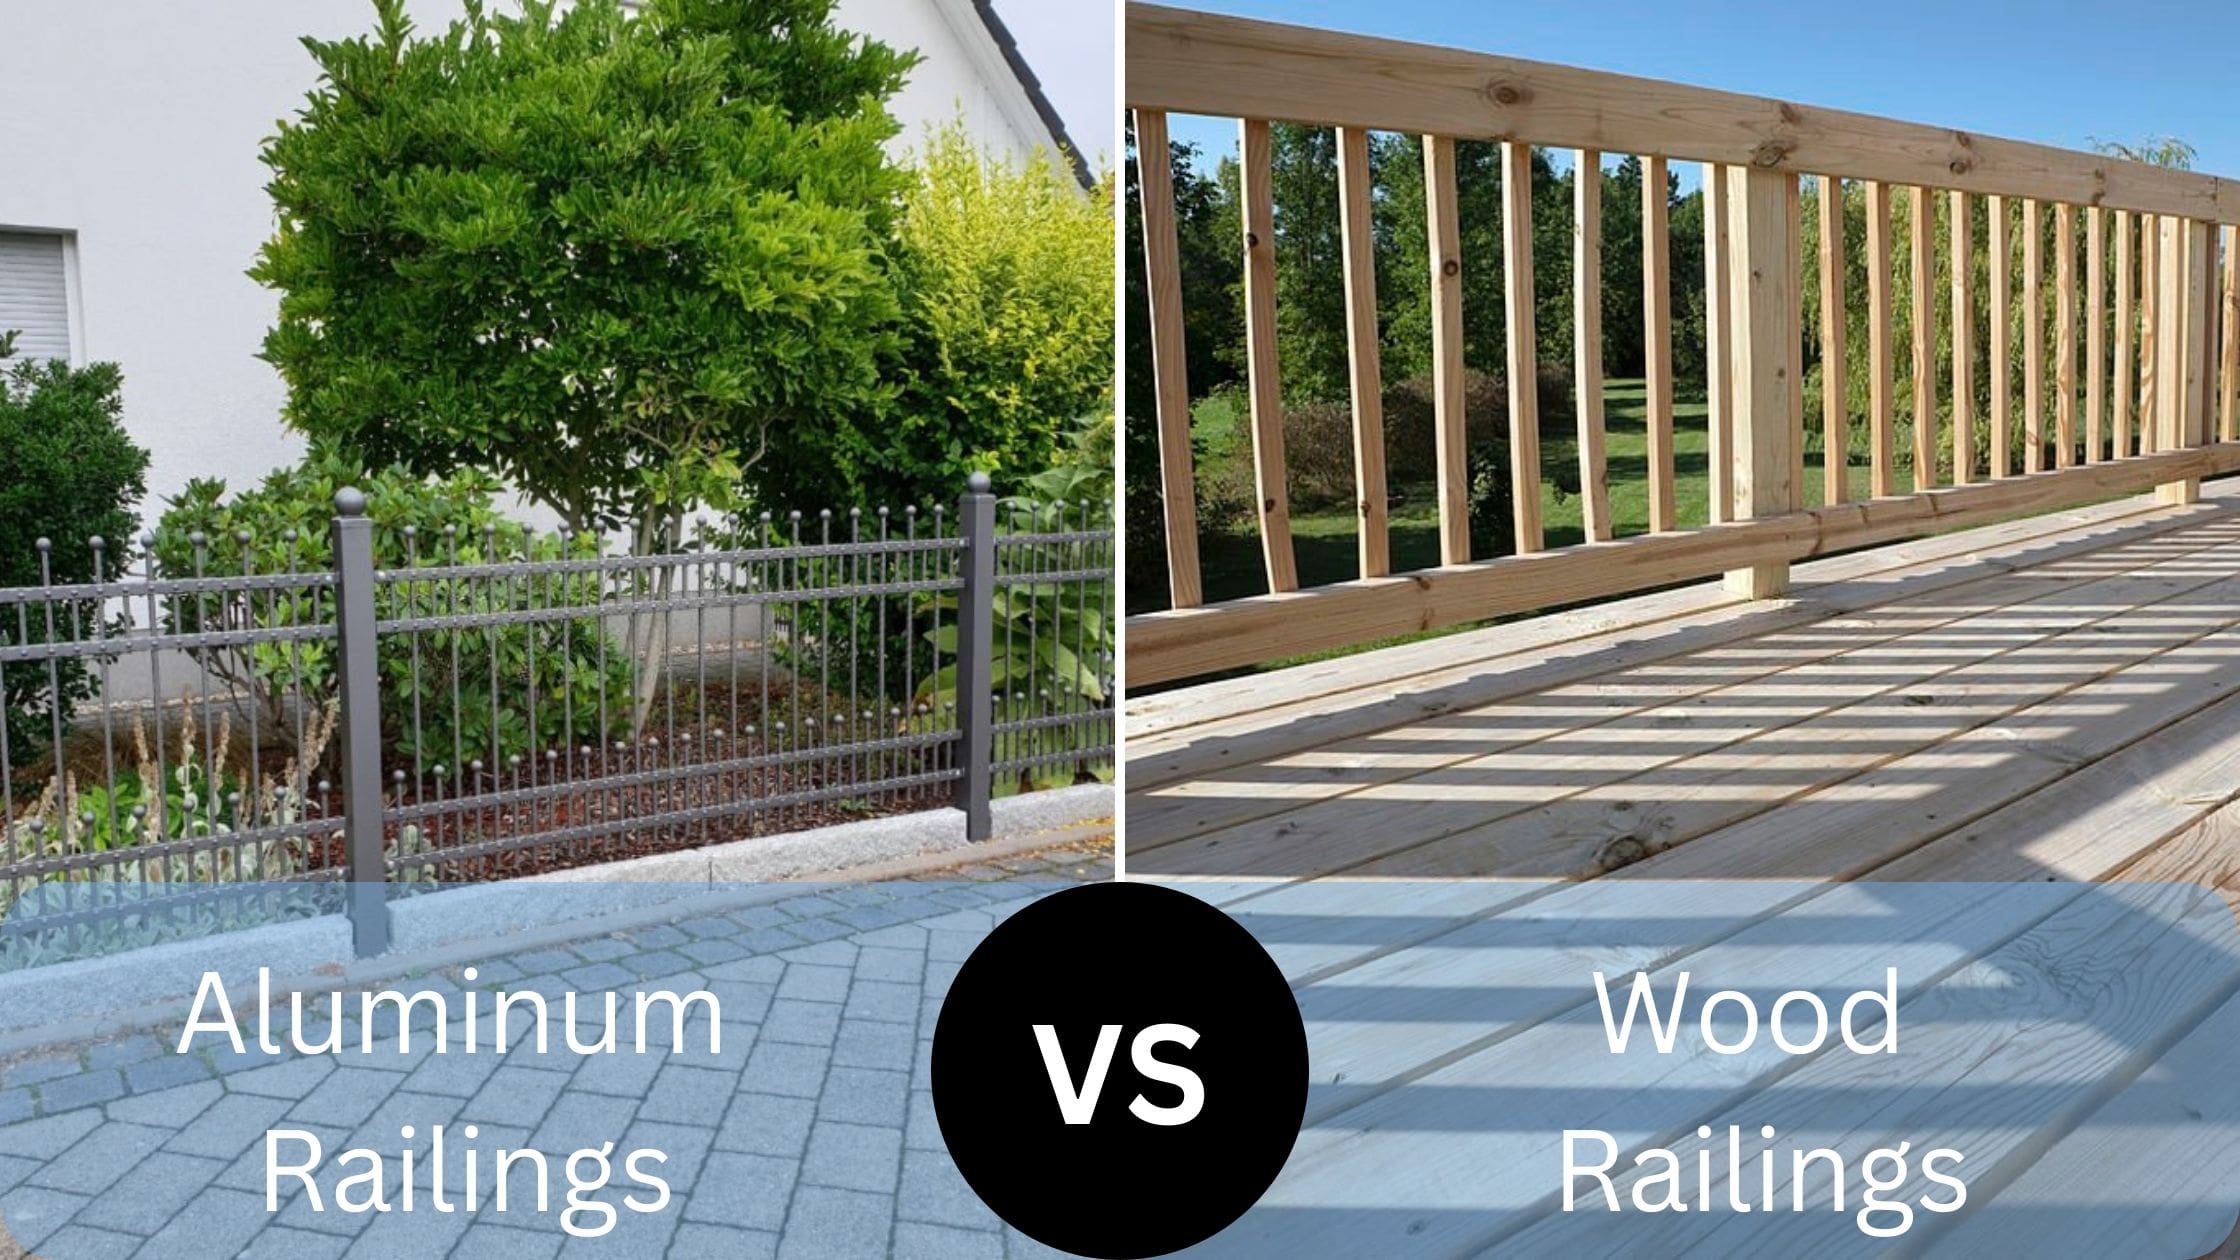 Wood vs Aluminum Railings